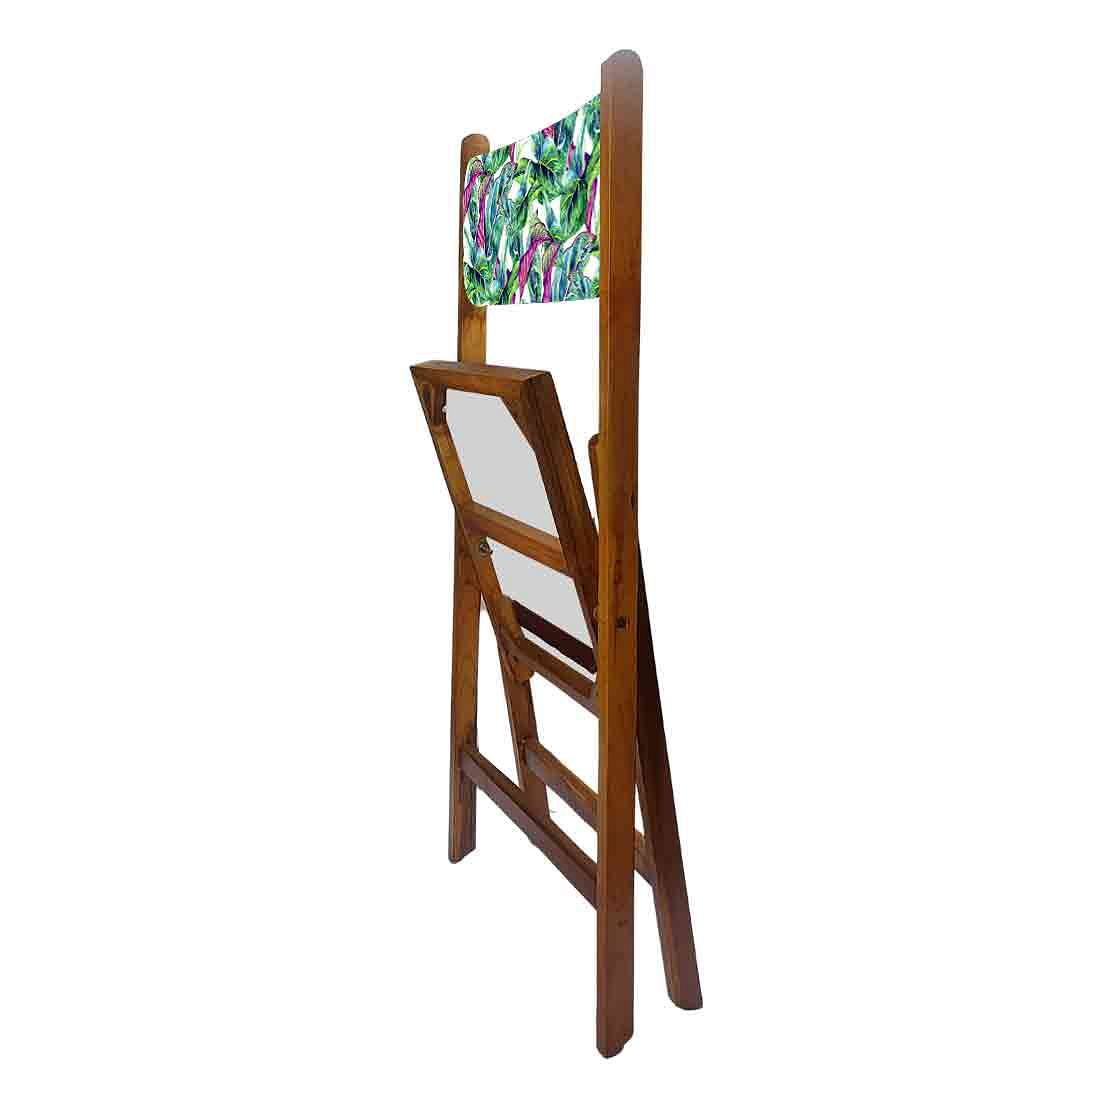 Nutcase Folding Teak Wood Chairs - Green Pink Leaves Nutcase